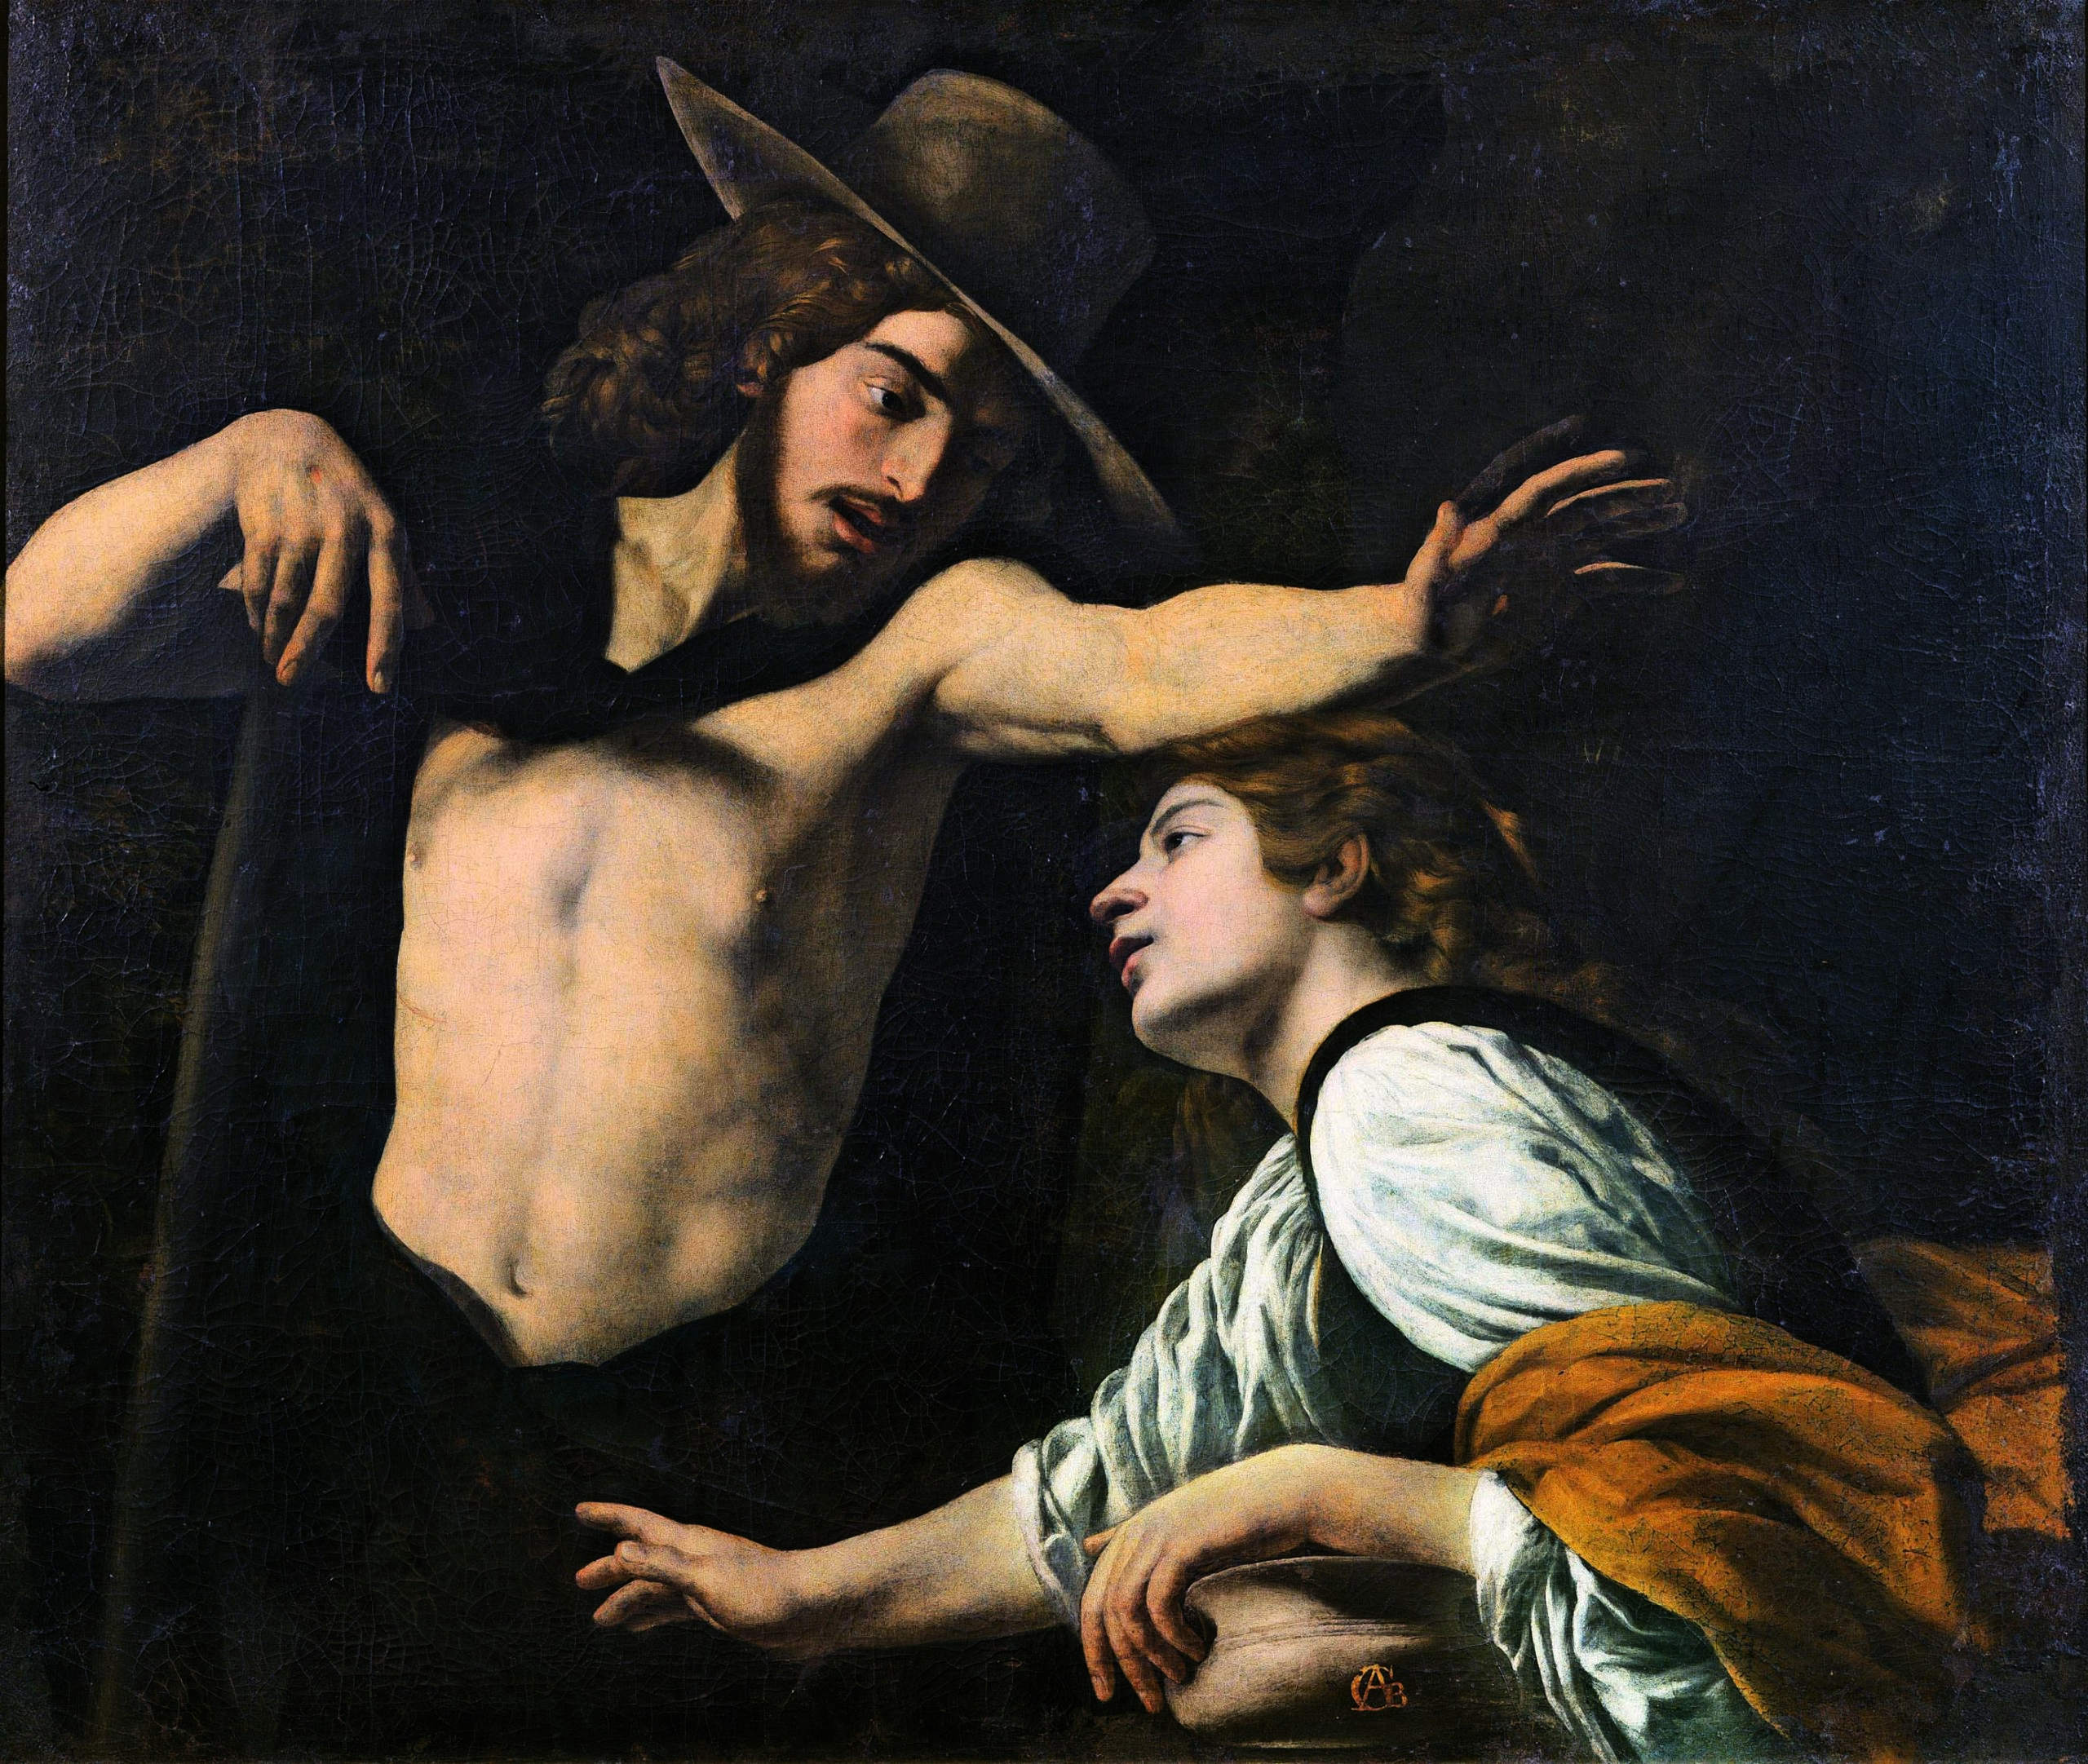 Napoli dopo Caravaggio: una mostra racconta l’eredità del maestro lombardo